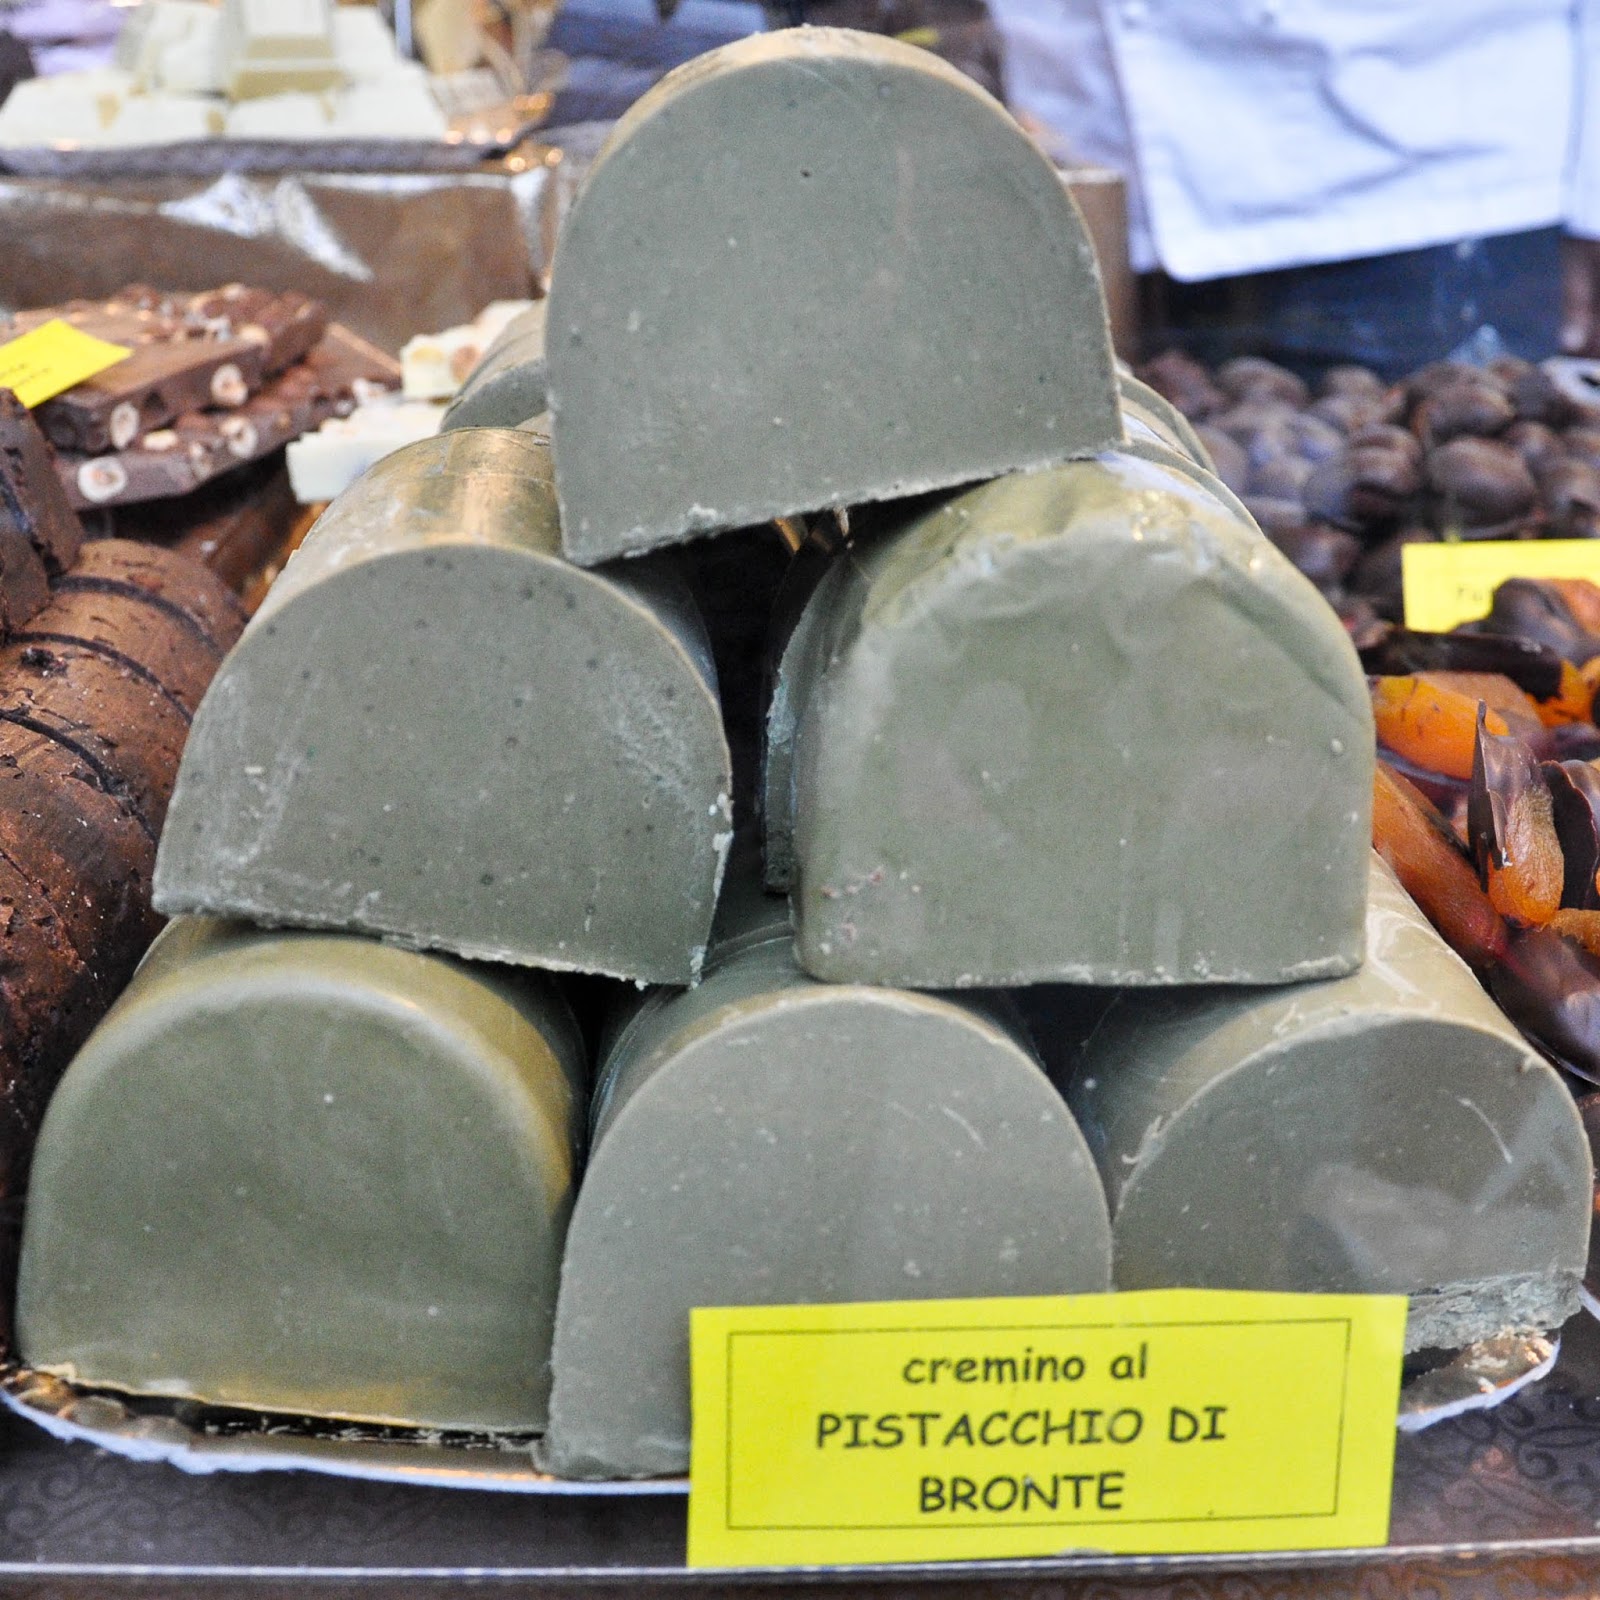 Cremino al Pistacchio, Chocolate Festival, Piazza dei Signori, Vicenza, Veneto, Italy